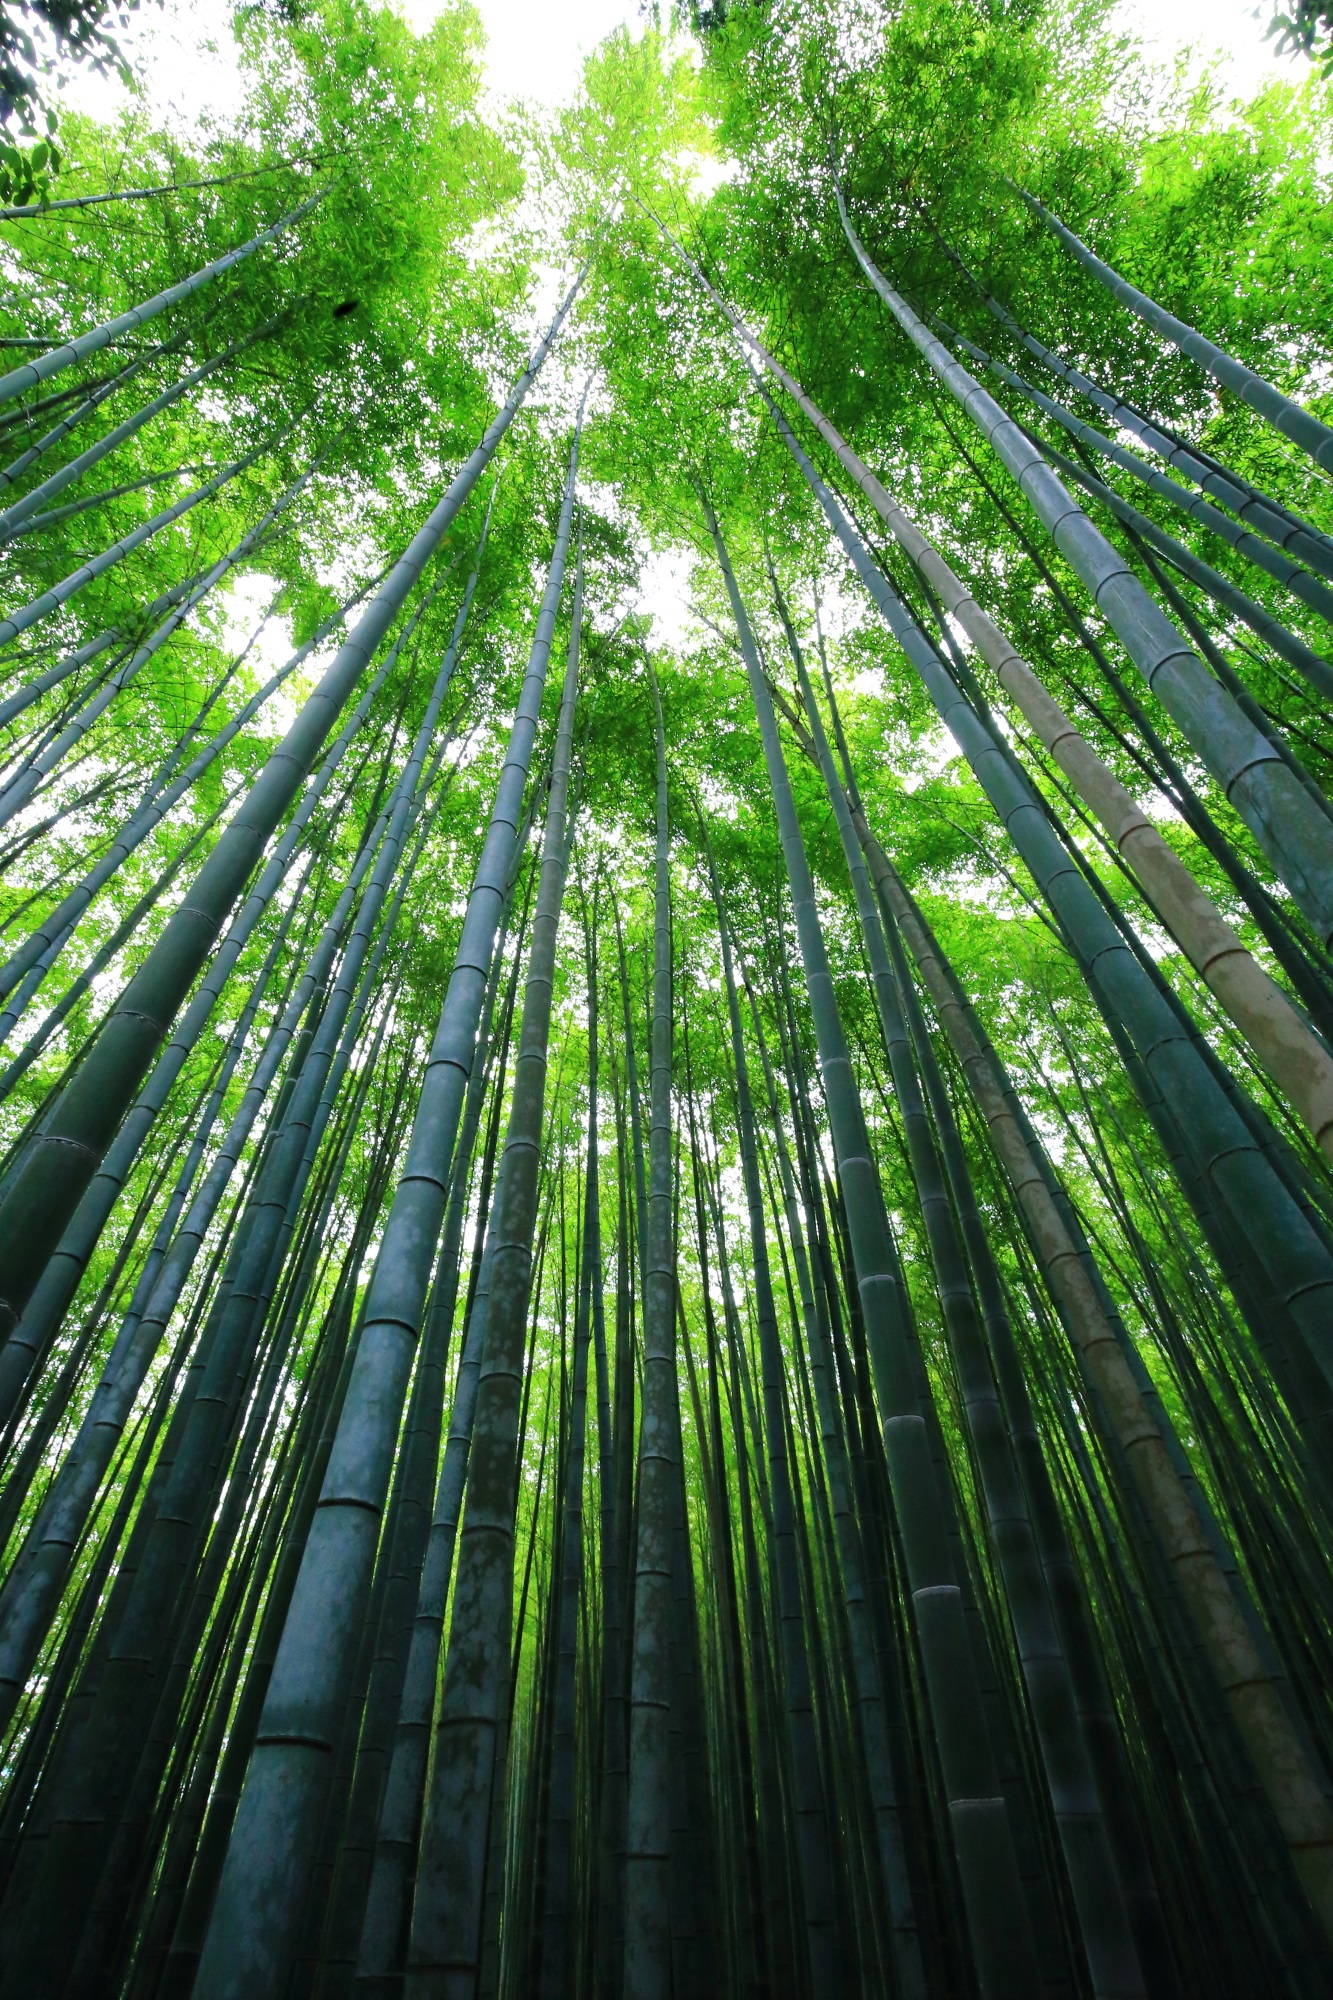 嵯峨野のどこまでも伸びていきそうな綺麗な竹